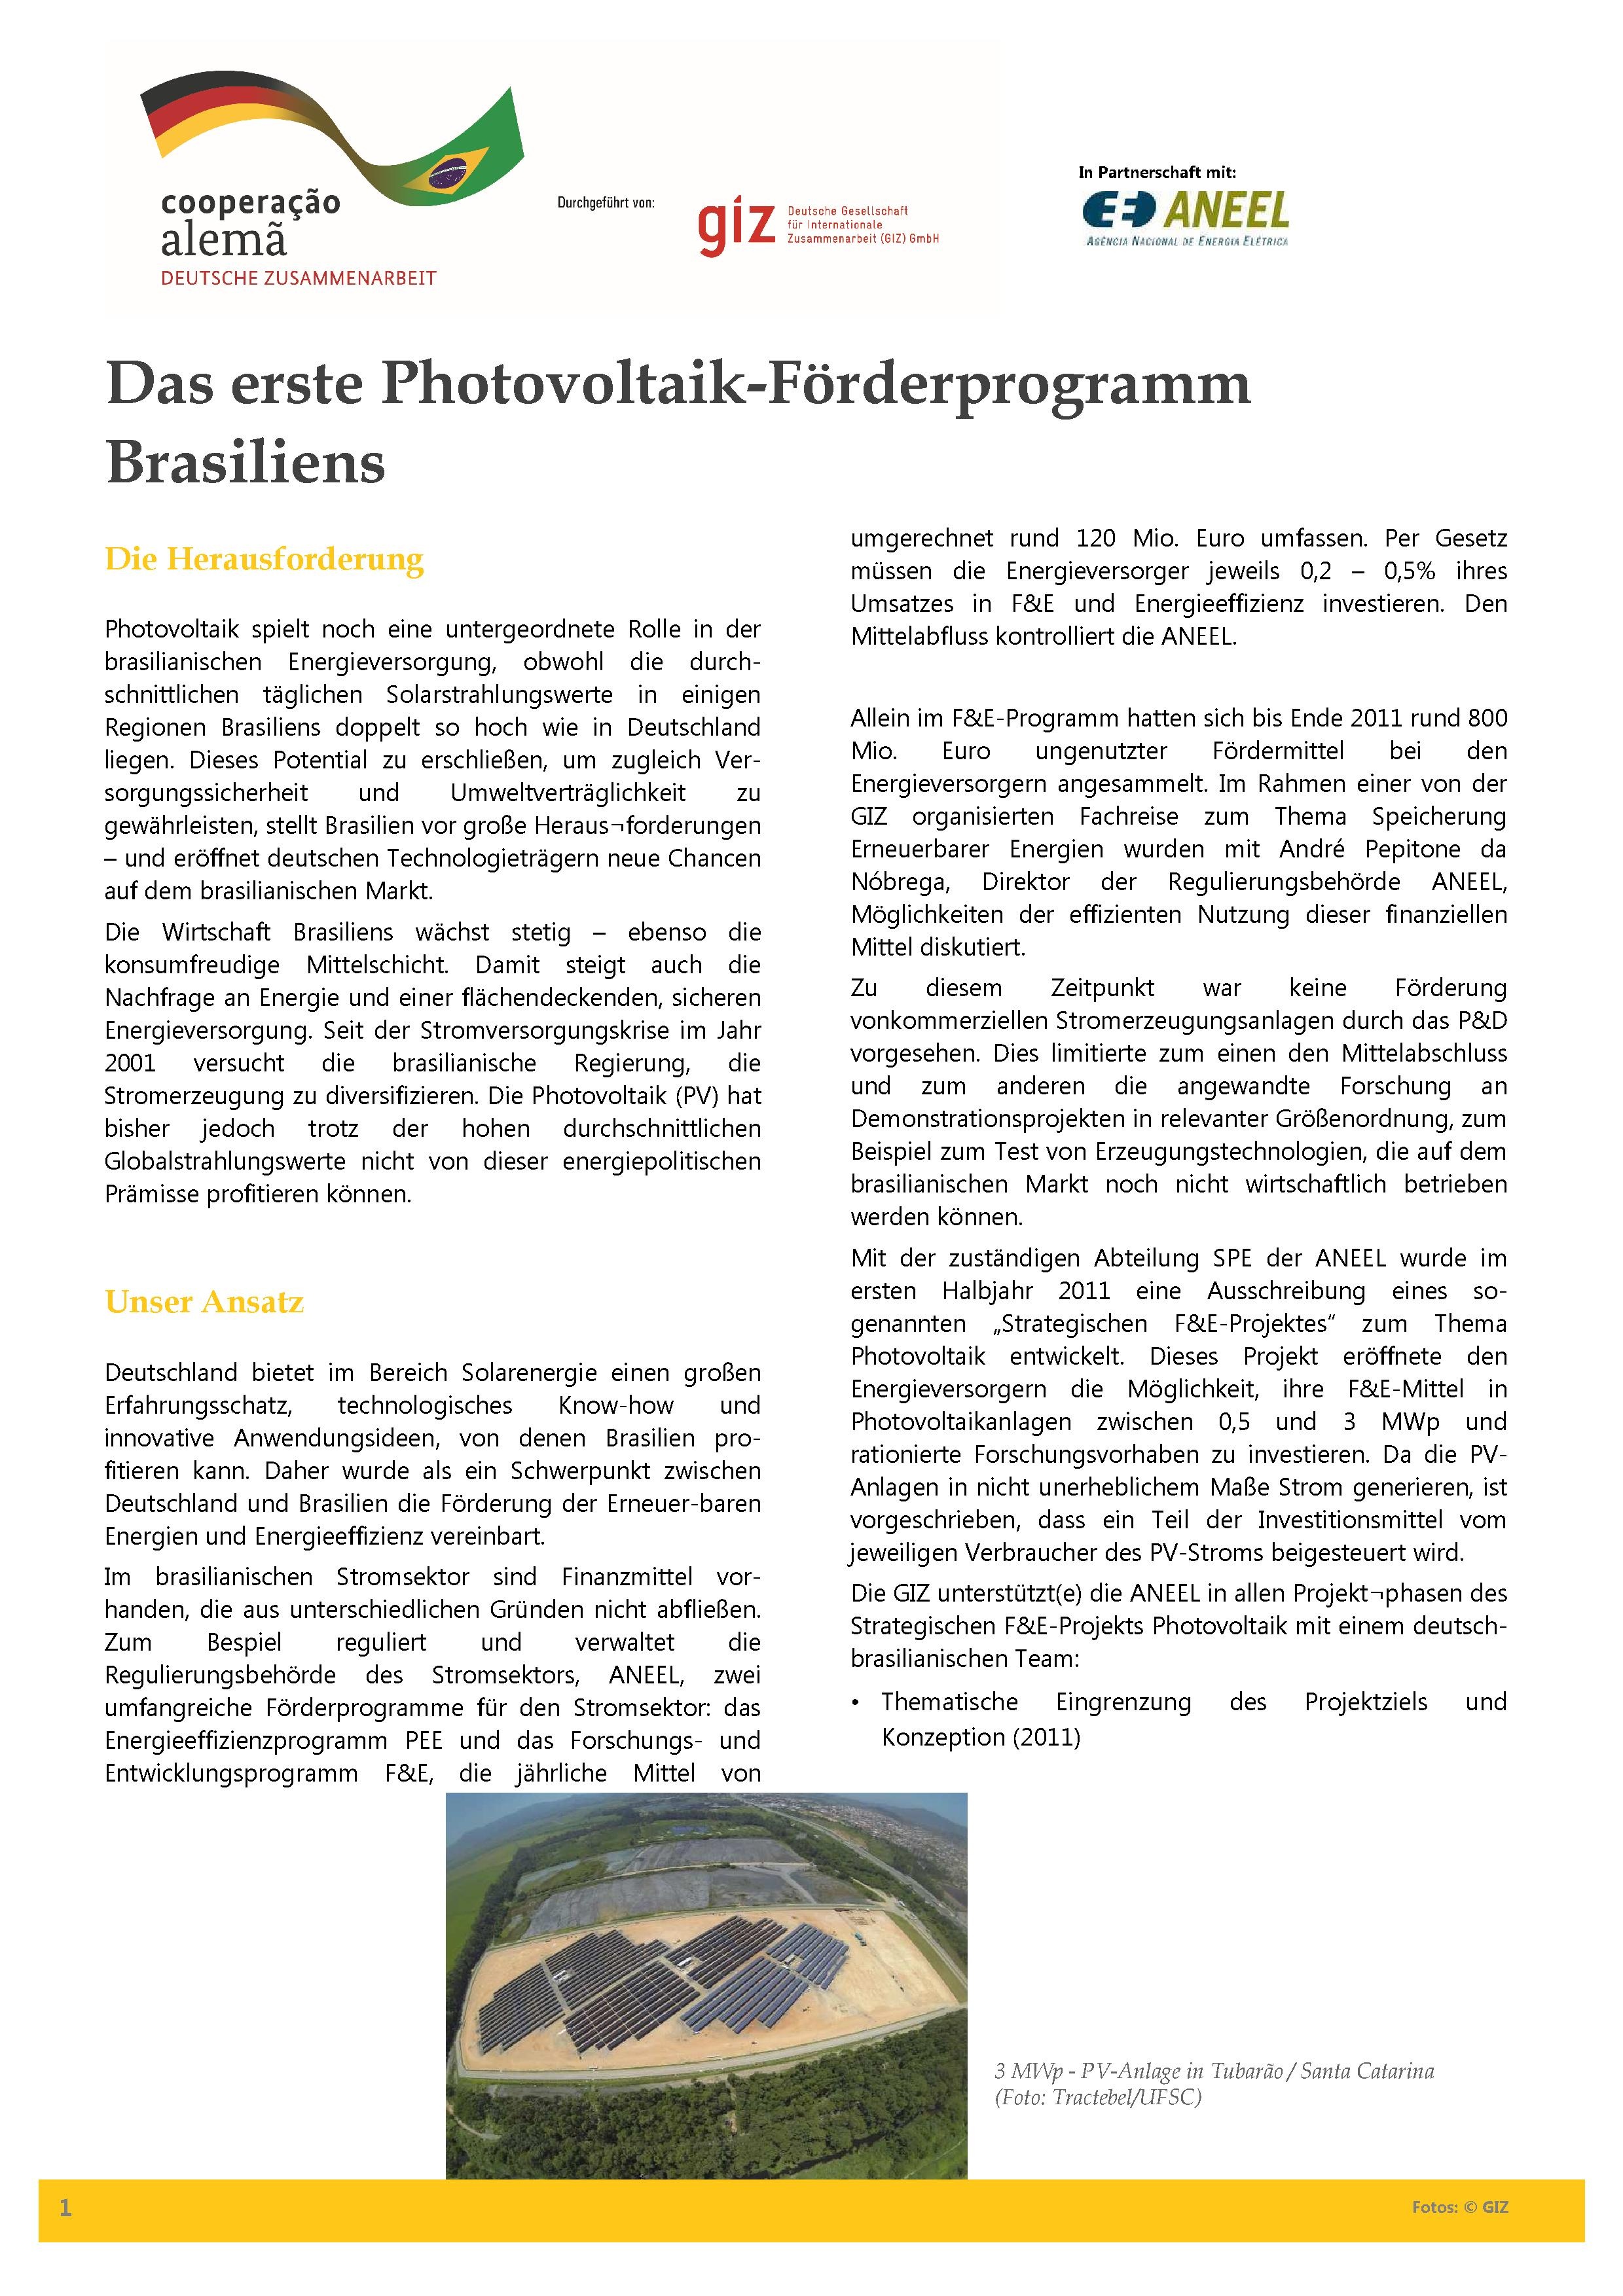 File:Infoblatt Photovoltaik-Förderprogramm.pdf